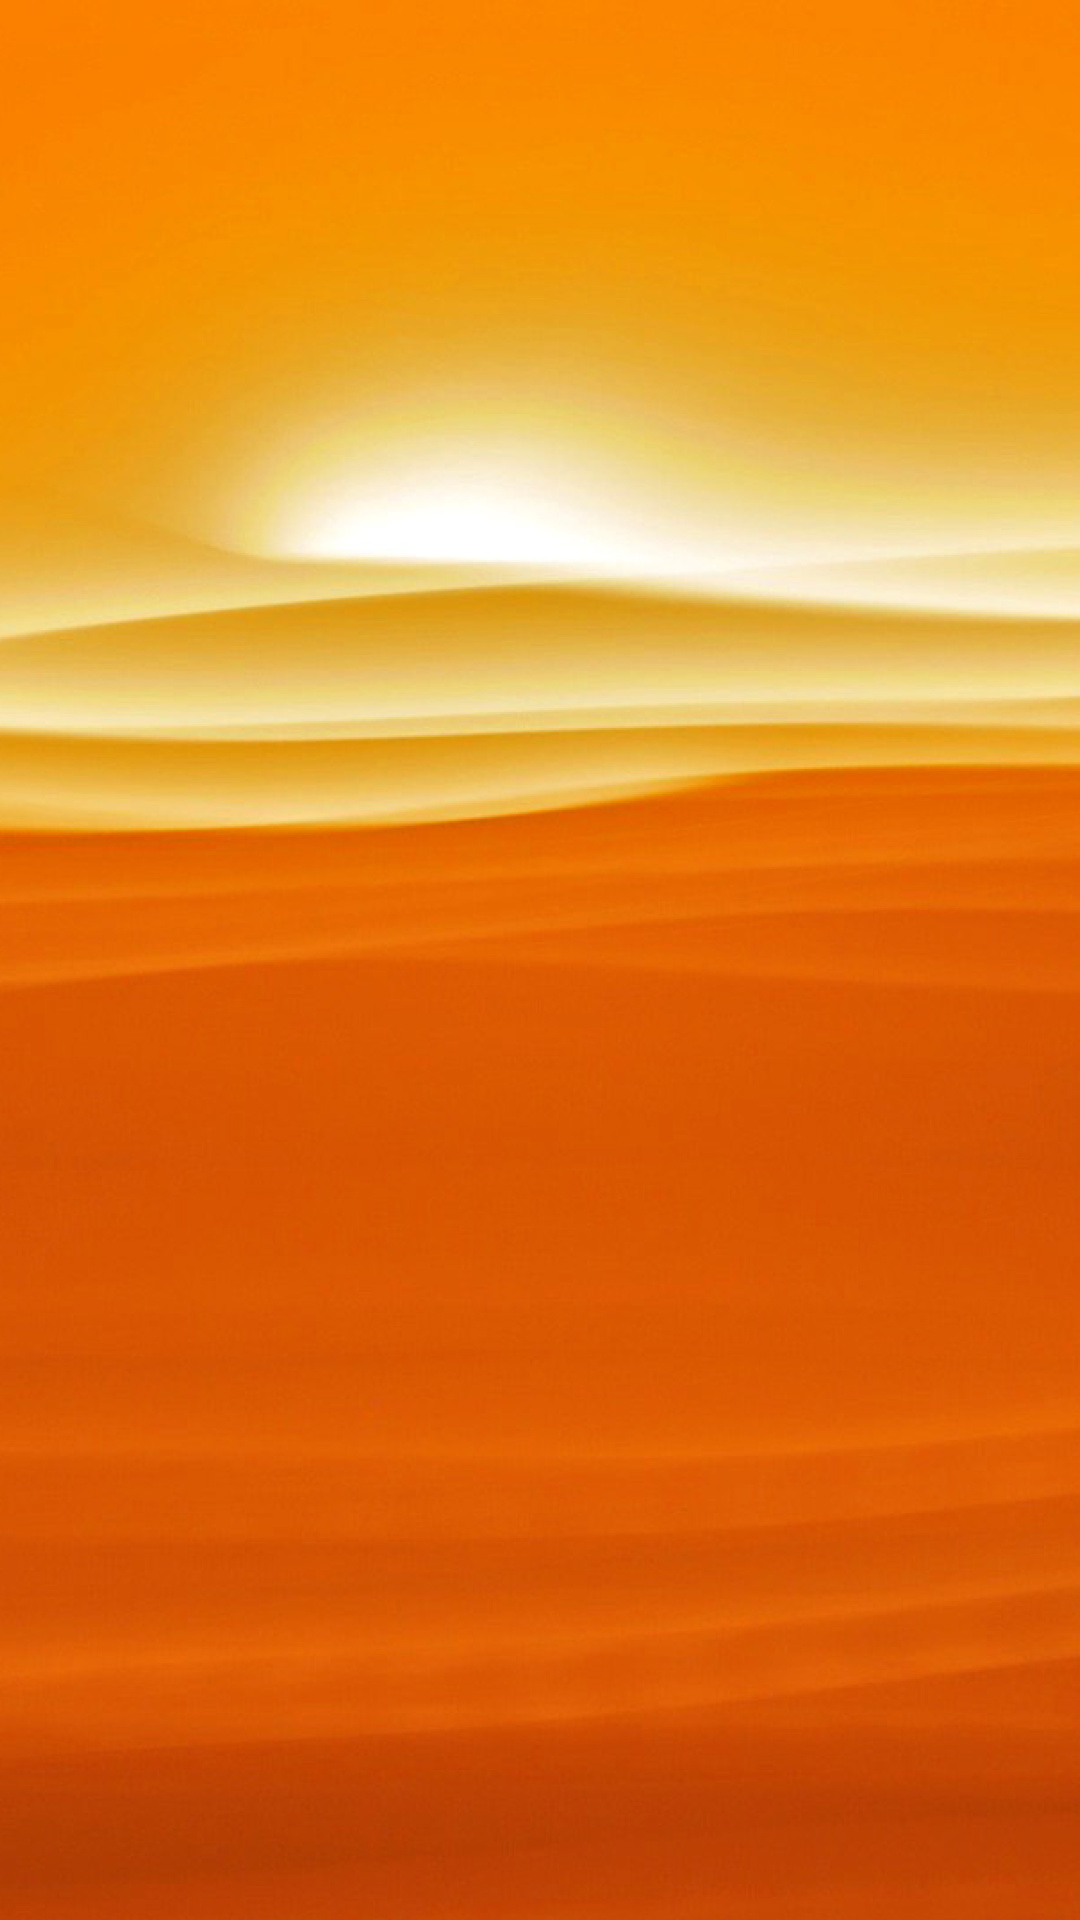 Orange Sky and Desert wallpaper 1080x1920